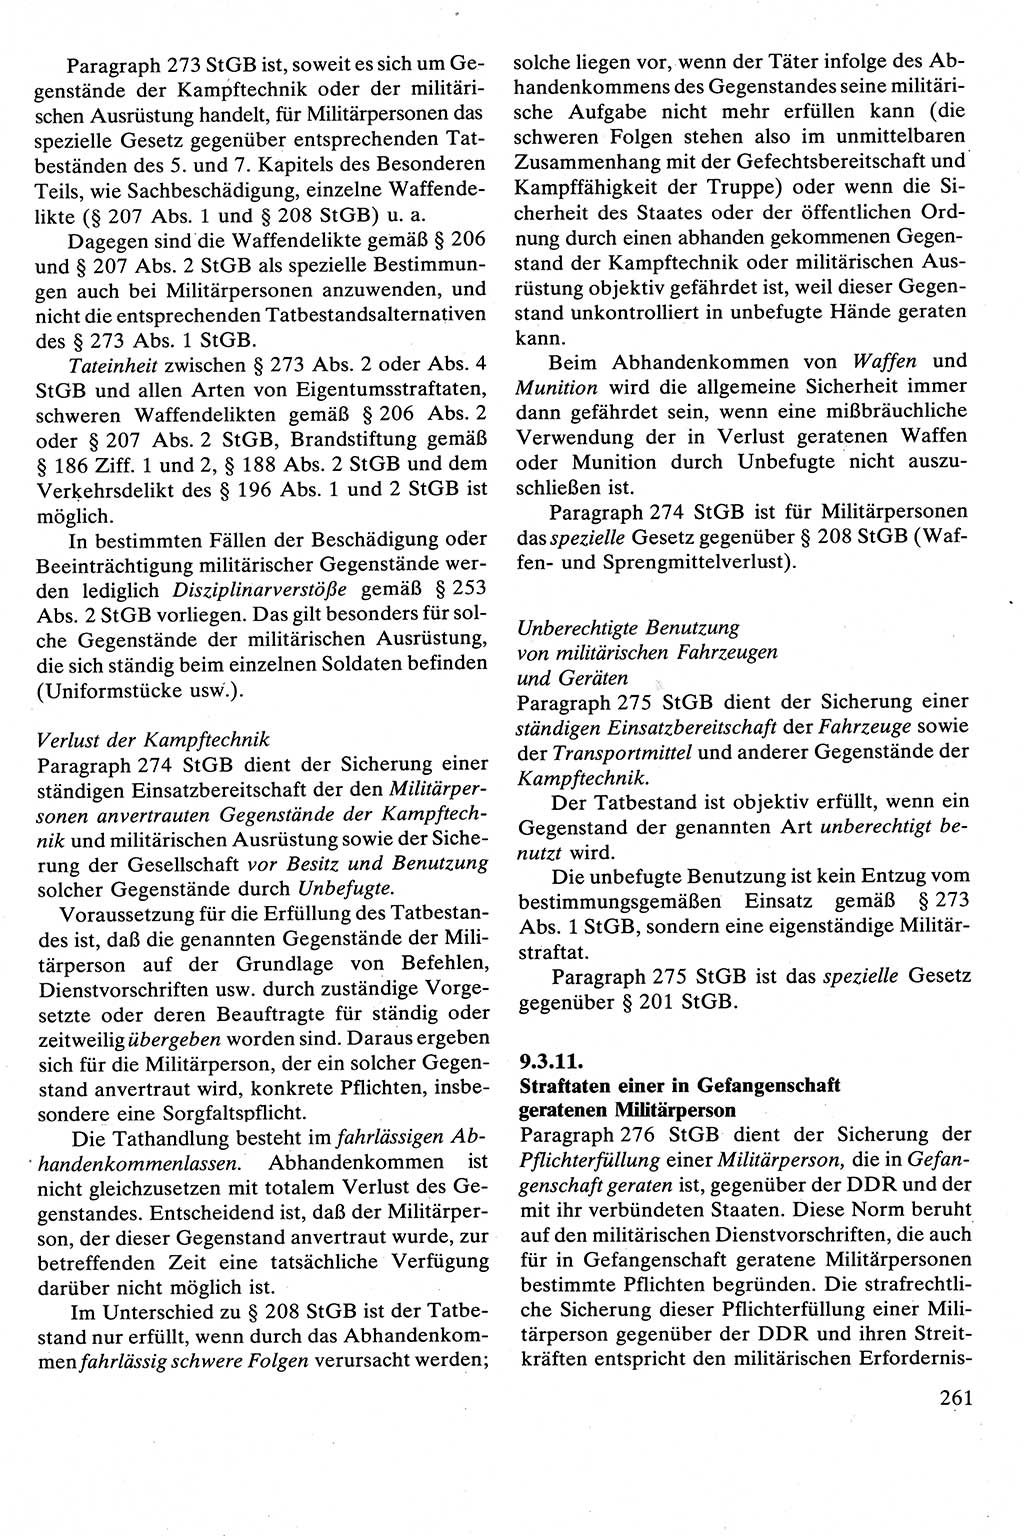 Strafrecht [Deutsche Demokratische Republik (DDR)], Besonderer Teil, Lehrbuch 1981, Seite 261 (Strafr. DDR BT Lb. 1981, S. 261)